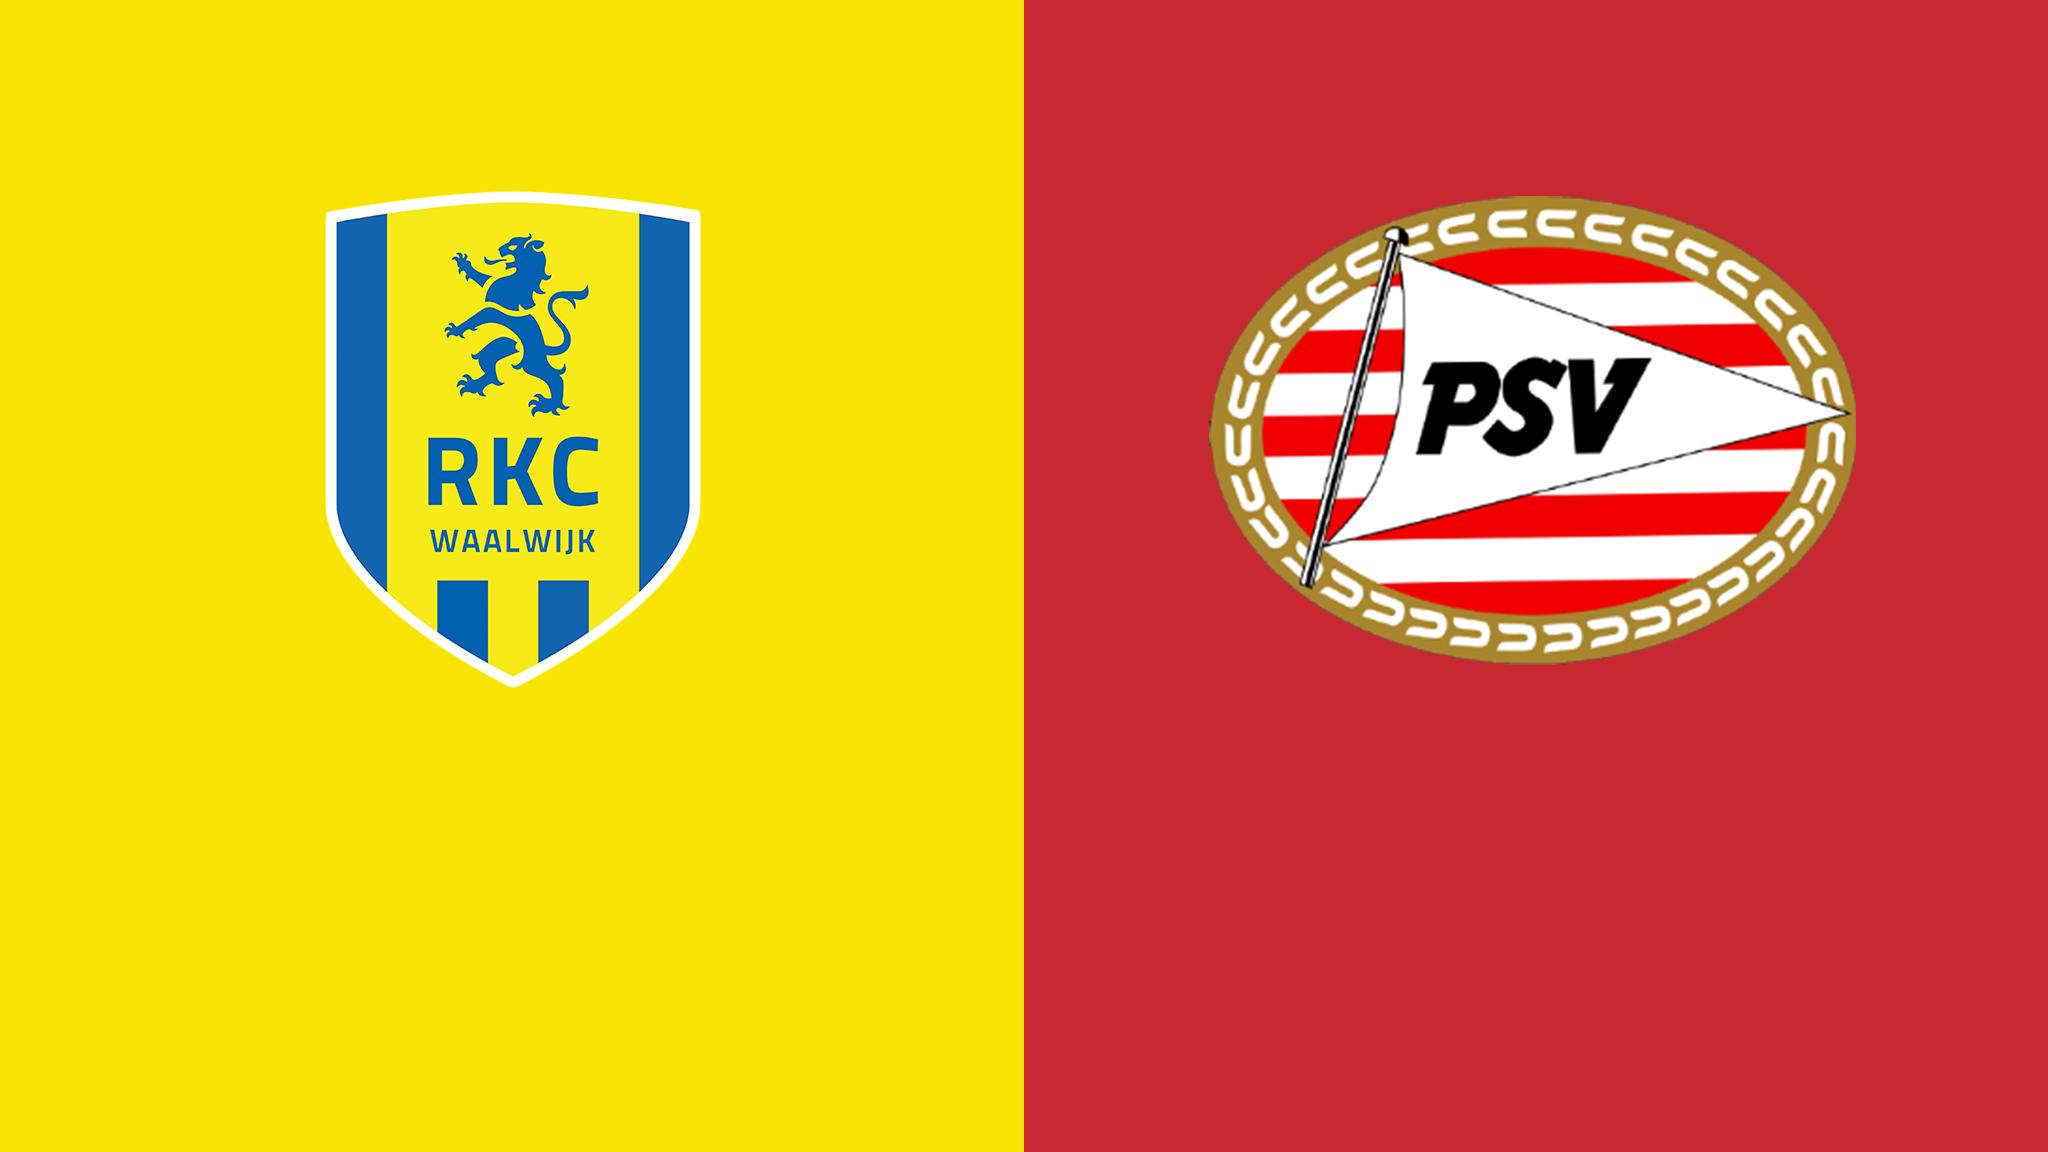 PSV reaches next round of KNVB Cup, RKC Waalwijk next Eredivisie opponent - Eindhoven News